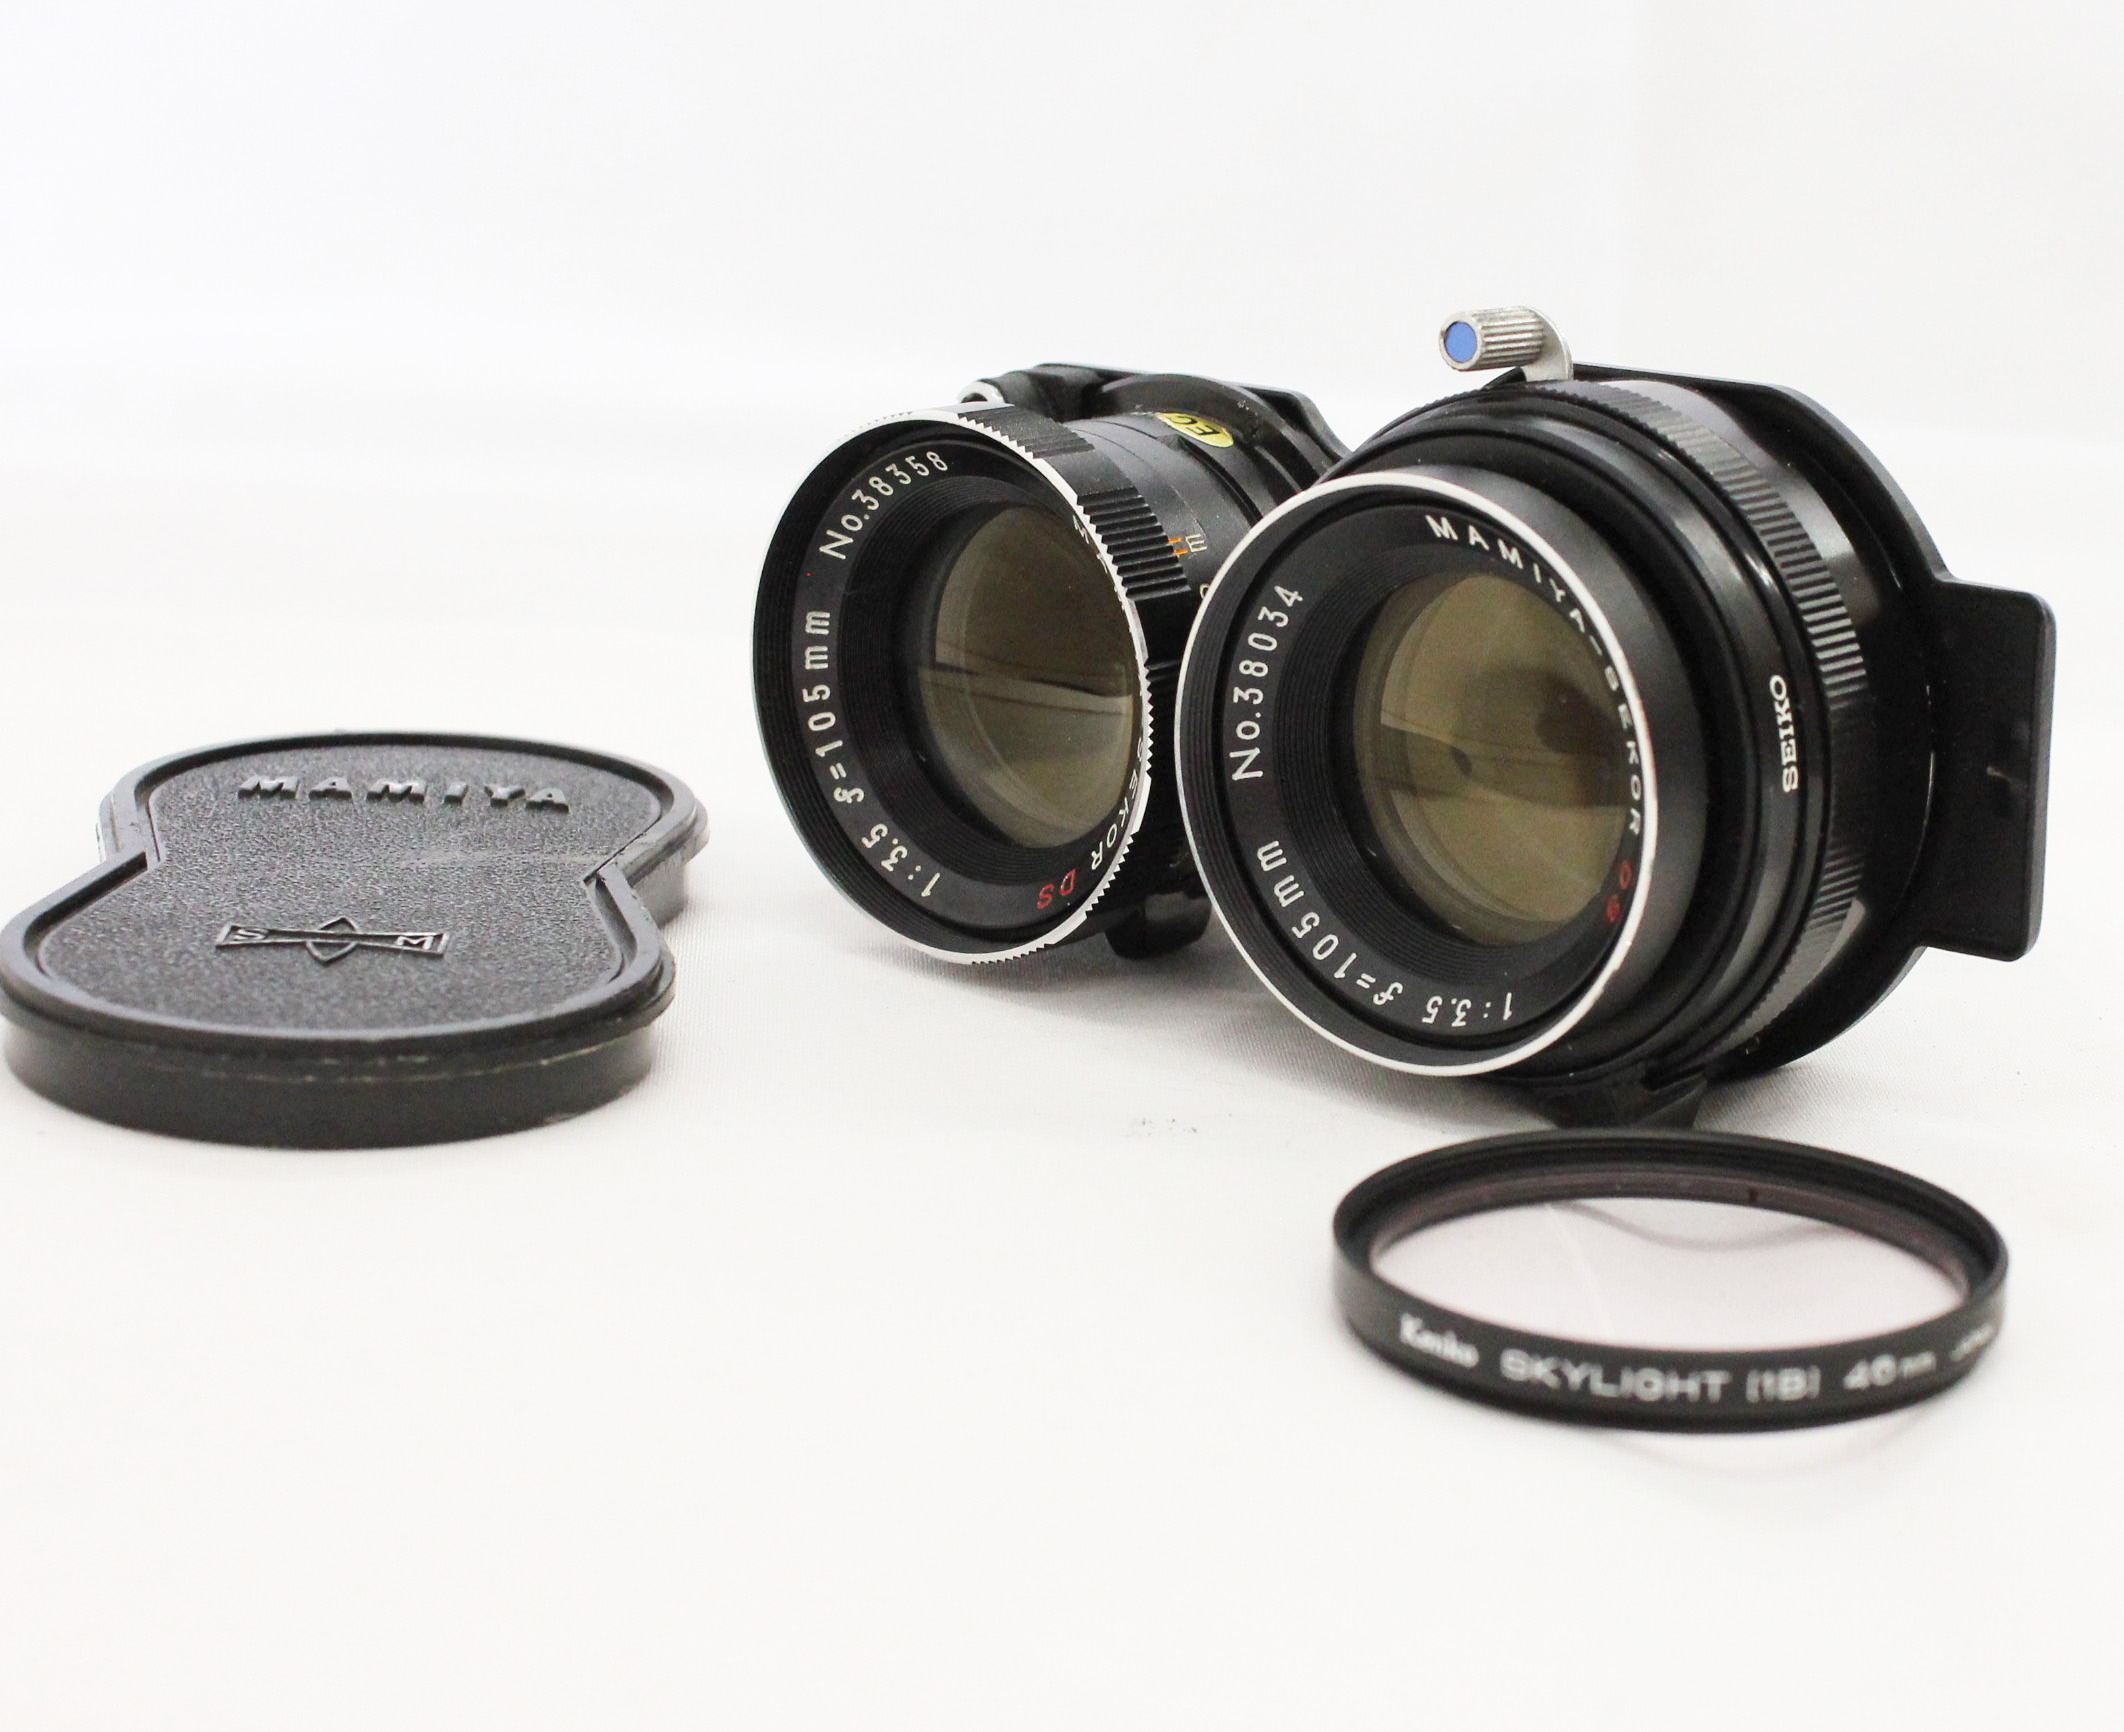  Mamiya C330 Professional Camera with Mamiya-Sekor DS 105mm F3.5 Blue Dot Lens from Japan Photo 16